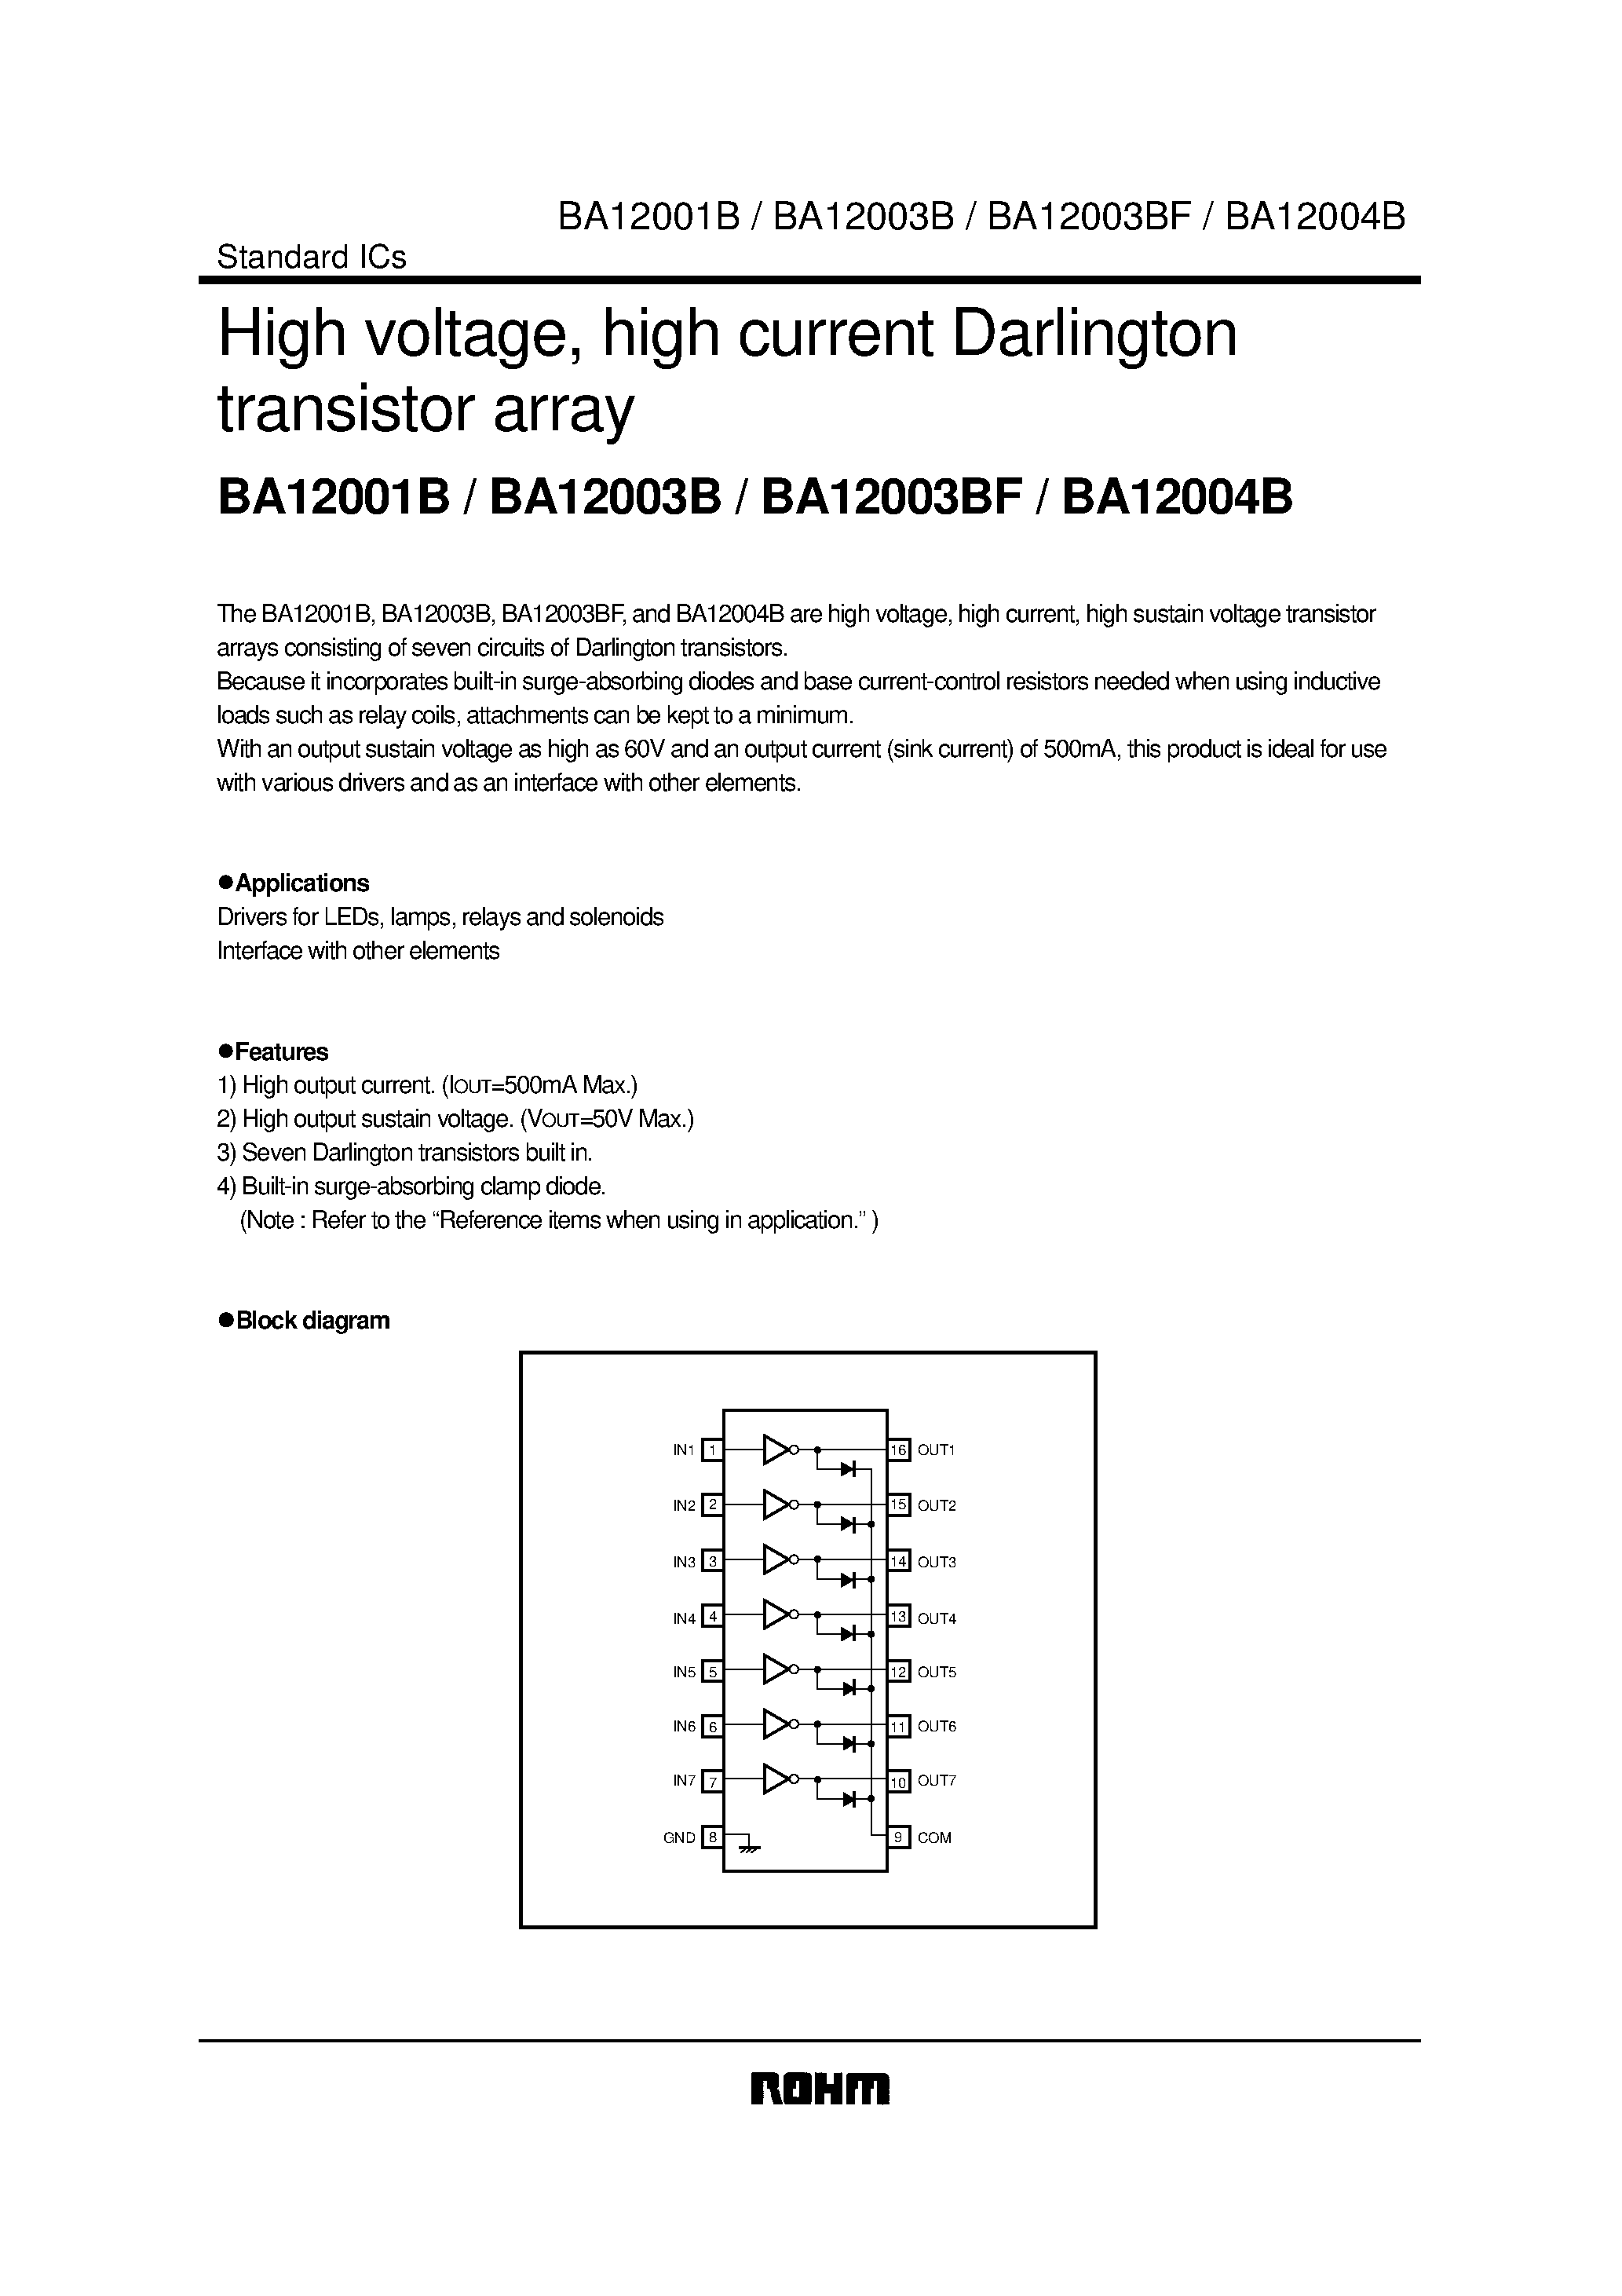 Даташит BA12004B - High voltage/ high current Darlington transistor array страница 1